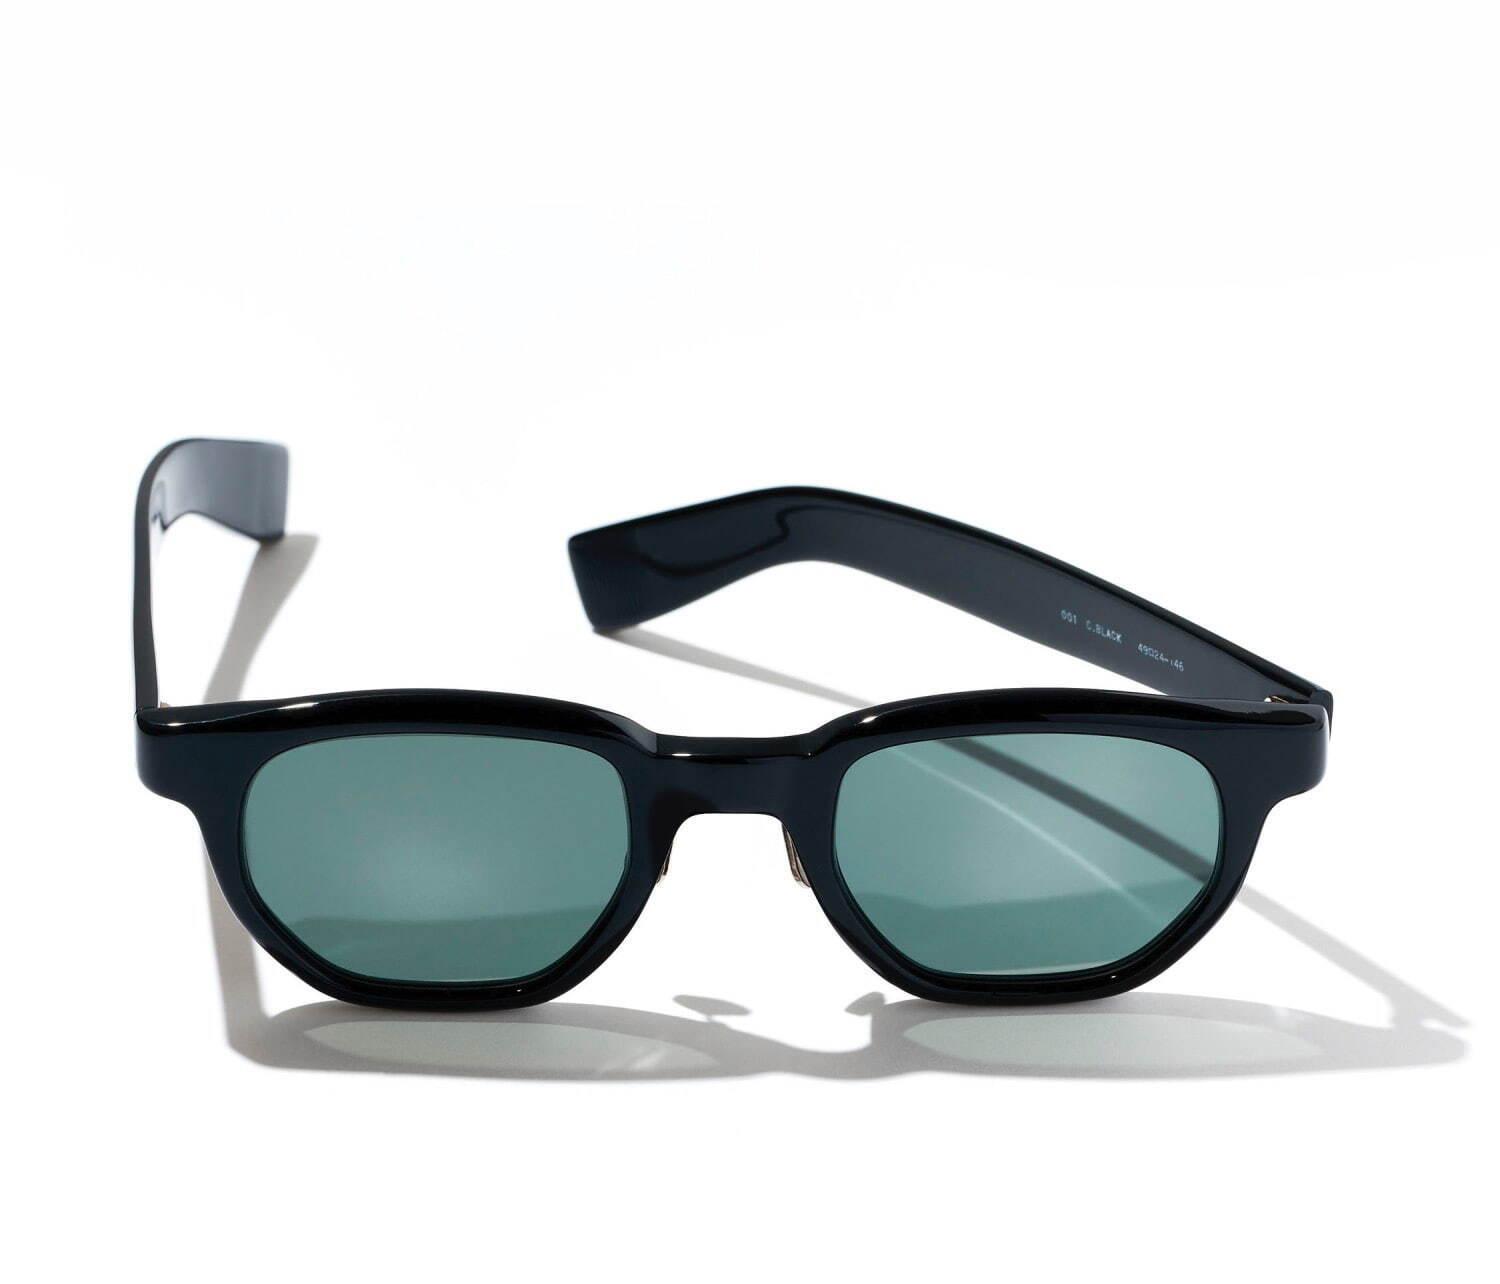 オーラリー“ヘキサゴン型レンズ”のサングラス、アイヴァン 7285のデザイナー中川浩考とコラボ コピー